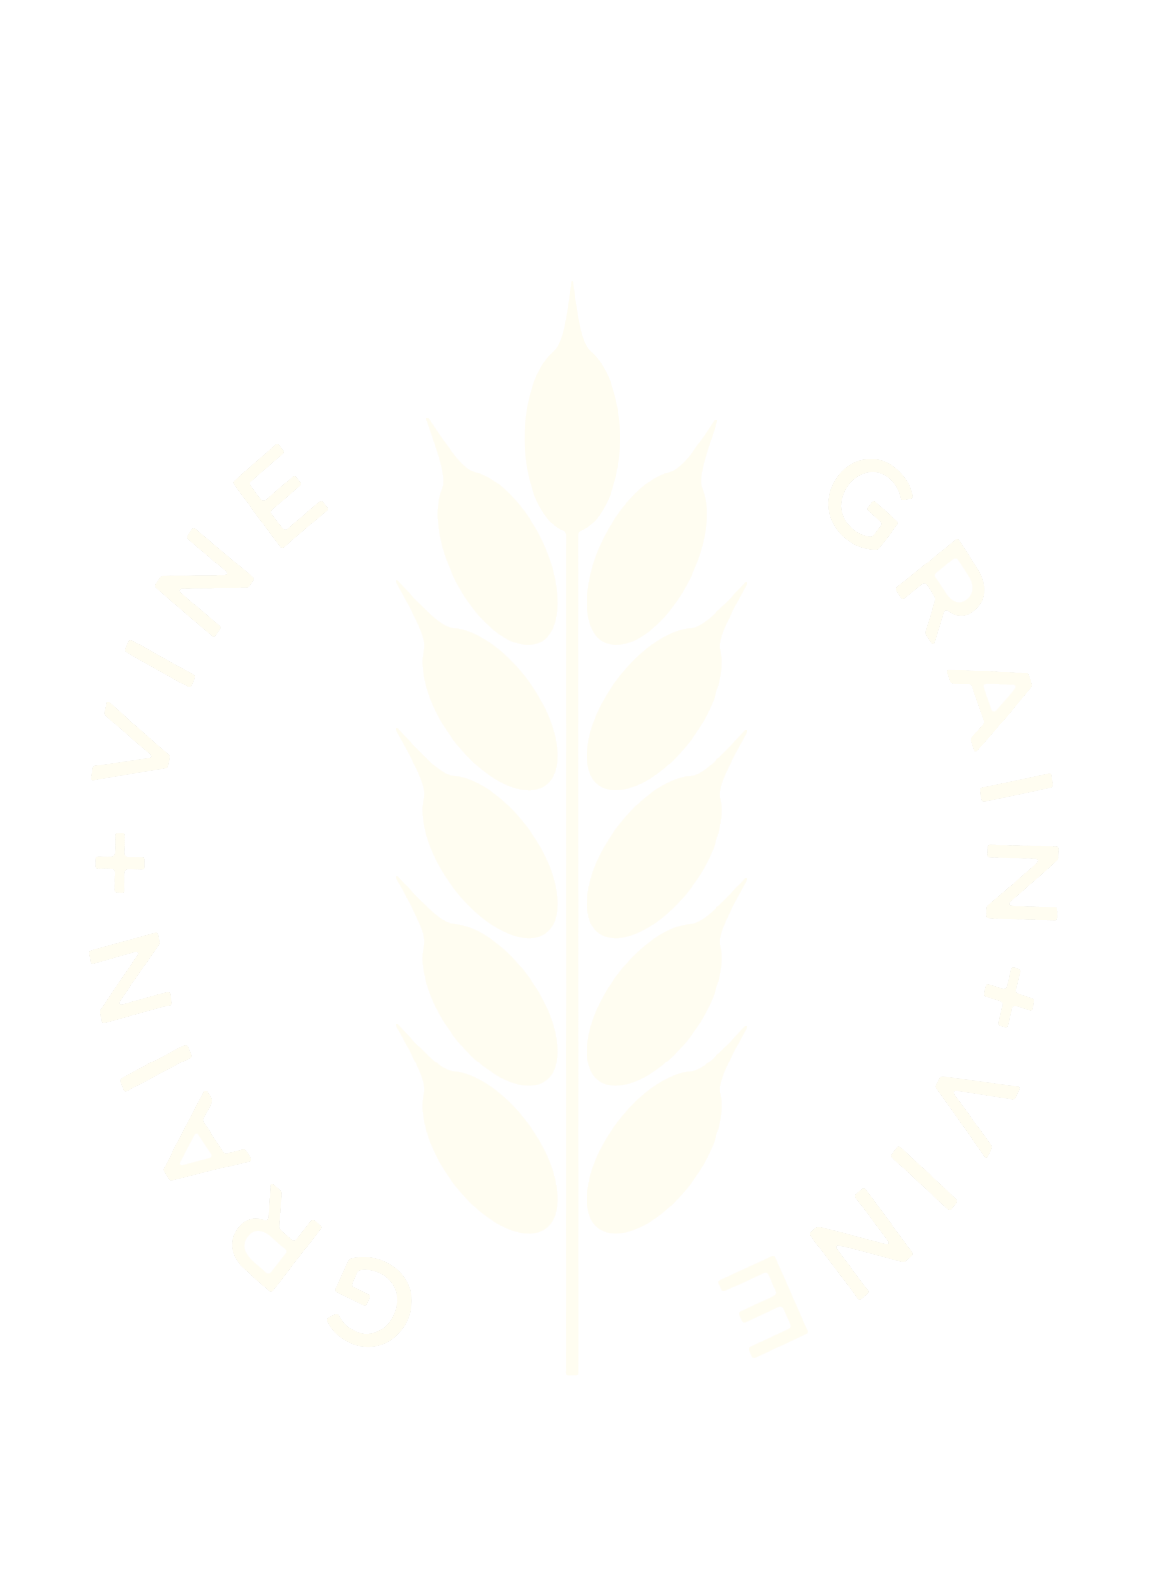 Grain Vine